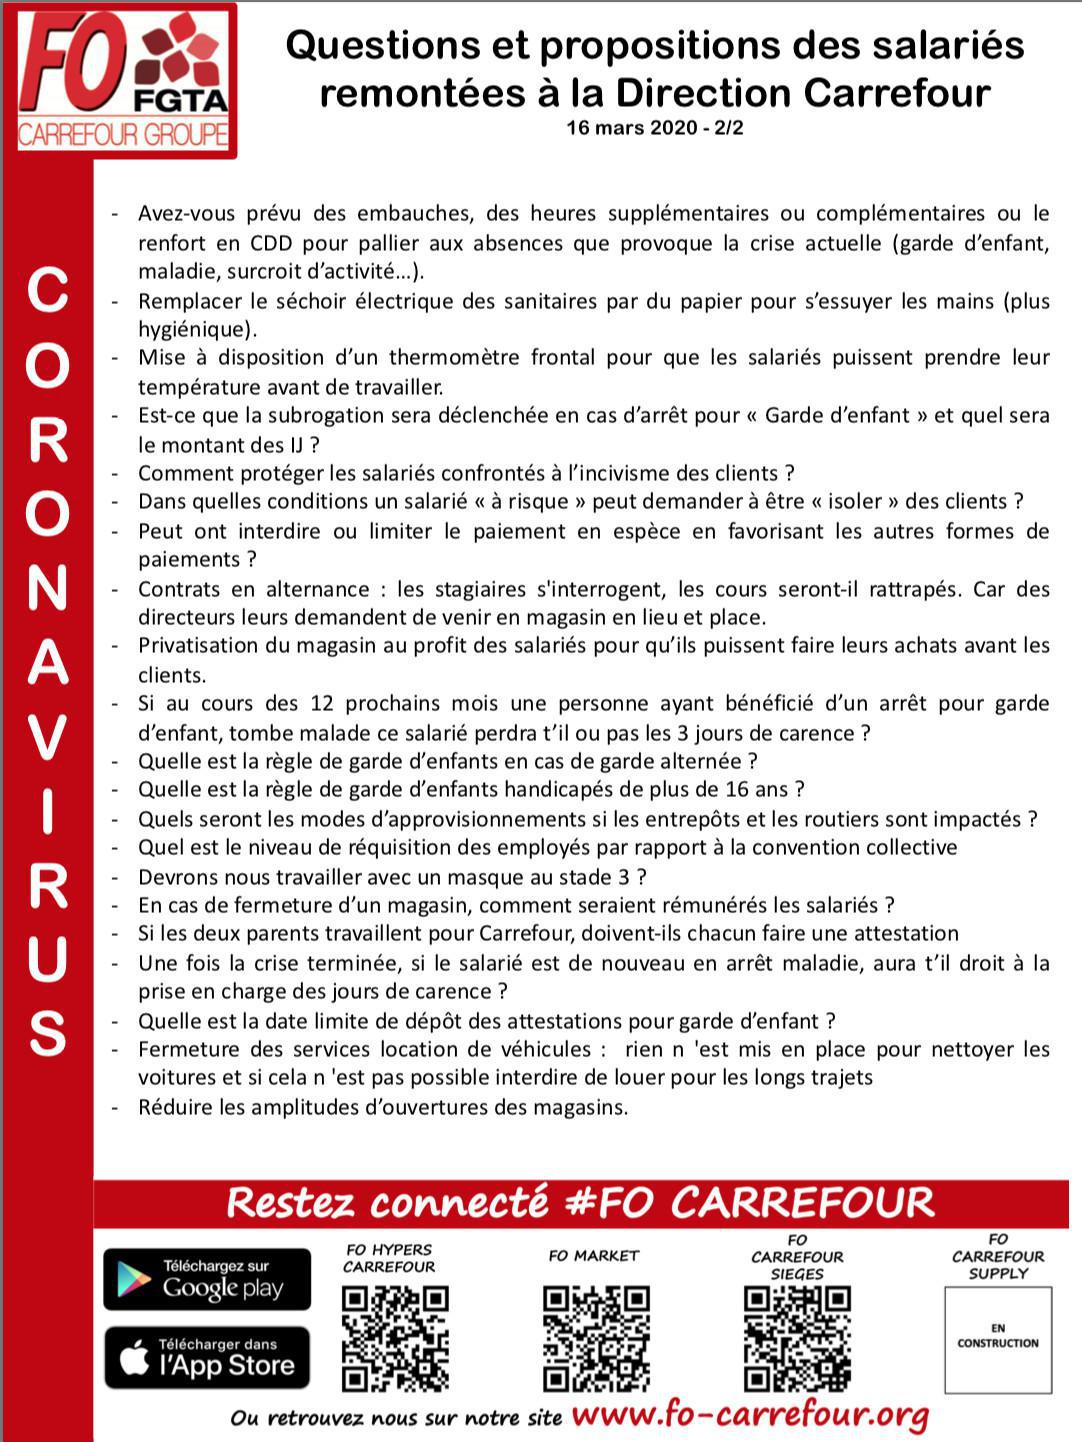 Questions et propositions des salariés remontées à la Direction Carrefour